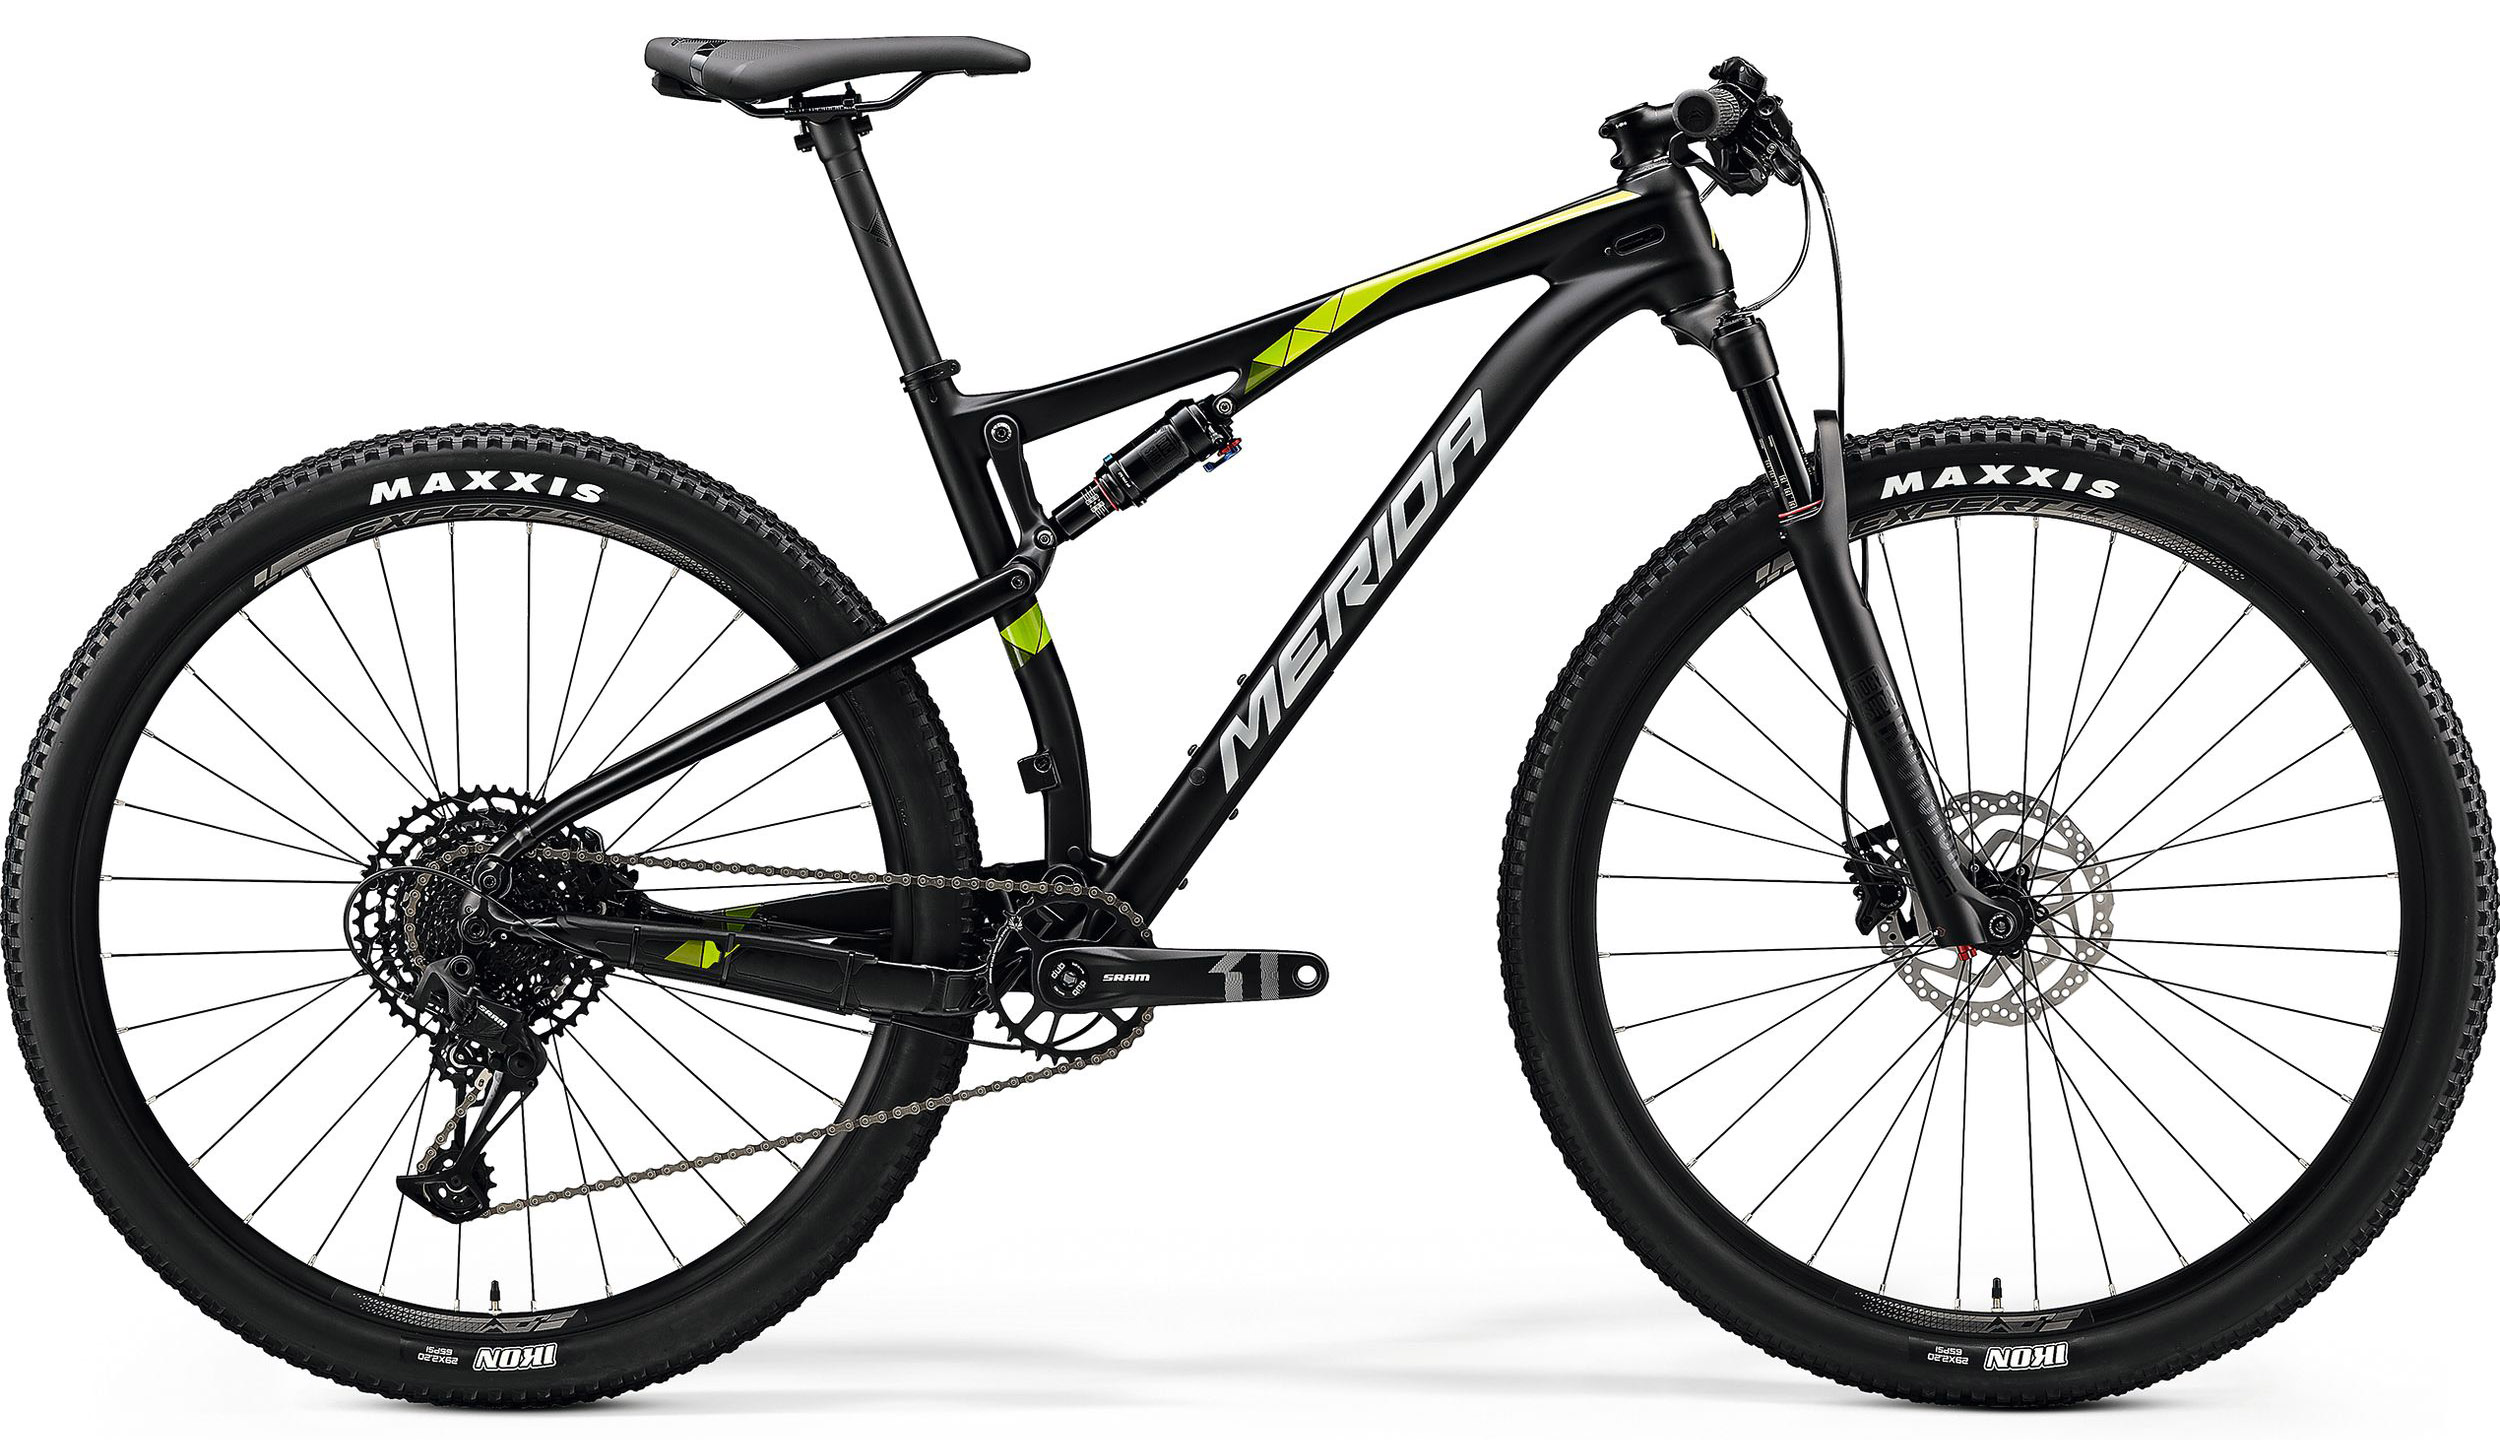  Велосипед Merida Ninety-Six 9.3000 2020